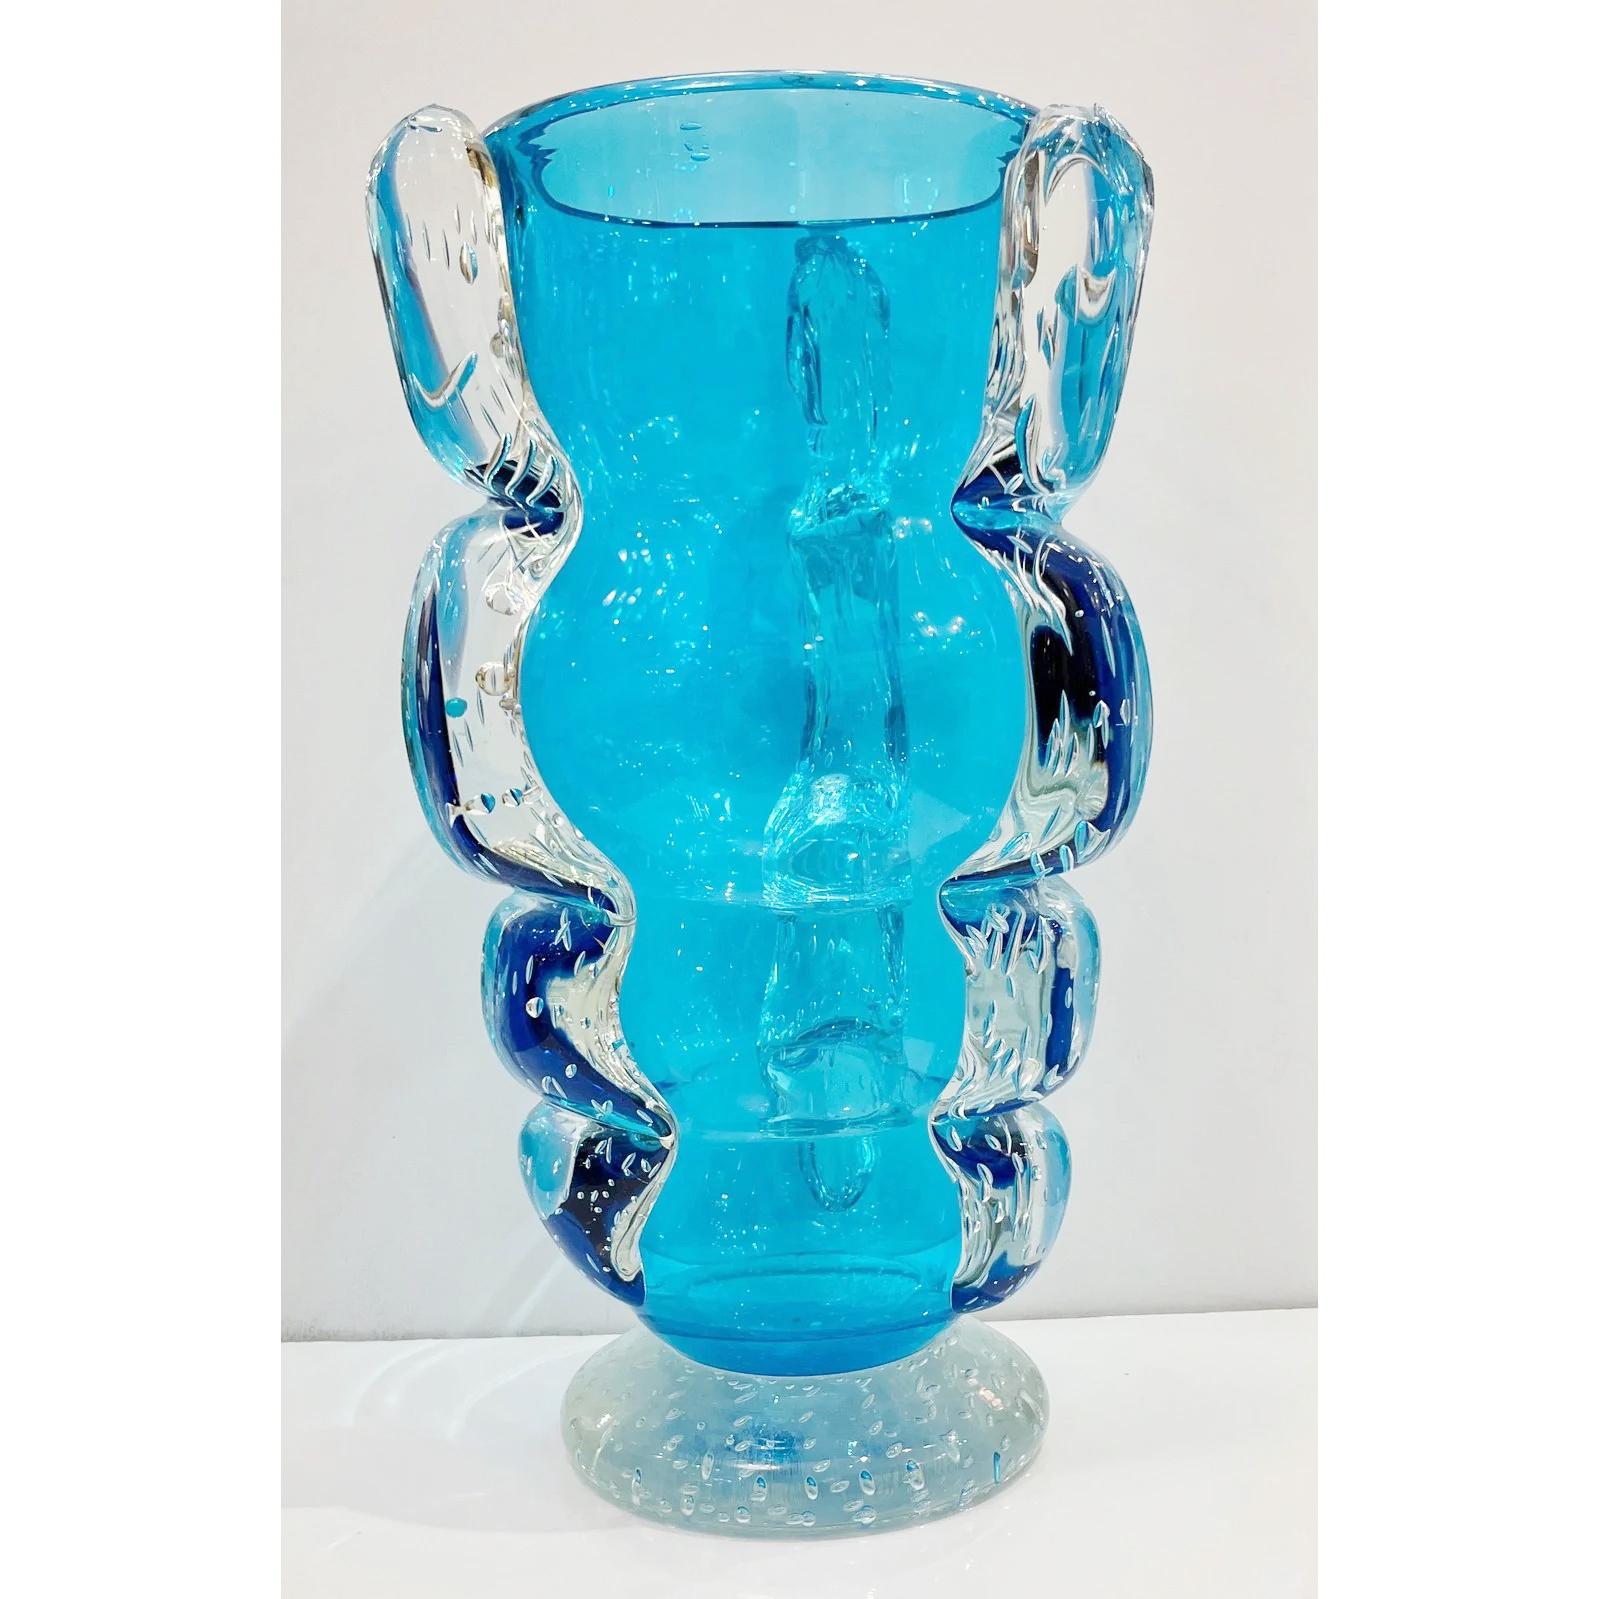 Vase aus den späten 1970er Jahren aus sehr dickem und hochwertigem mundgeblasenem Muranoglas in einer ungewöhnlichen durchscheinenden aquablauen Farbe mit einer seltenen Wellenform. Der Korpus weist ein dreifaches Reliefdekor aus klarem Glas auf,